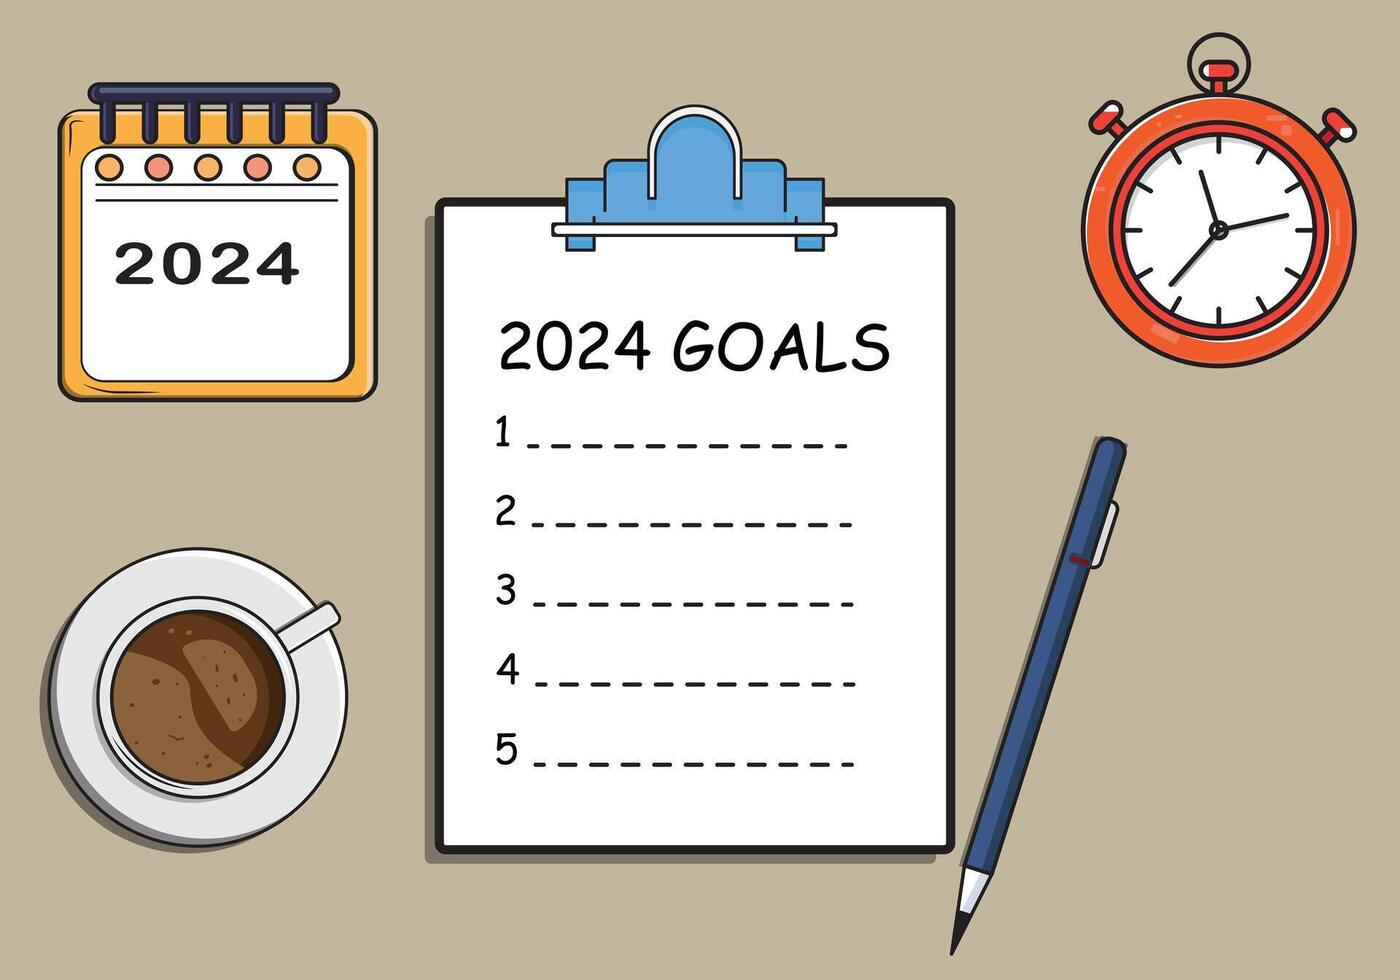 Neu Jahr Tor ,2024 Tor aufführen notbook ,Stift,Kalender, Uhr, Kaffee Tasse Vektor Illustration